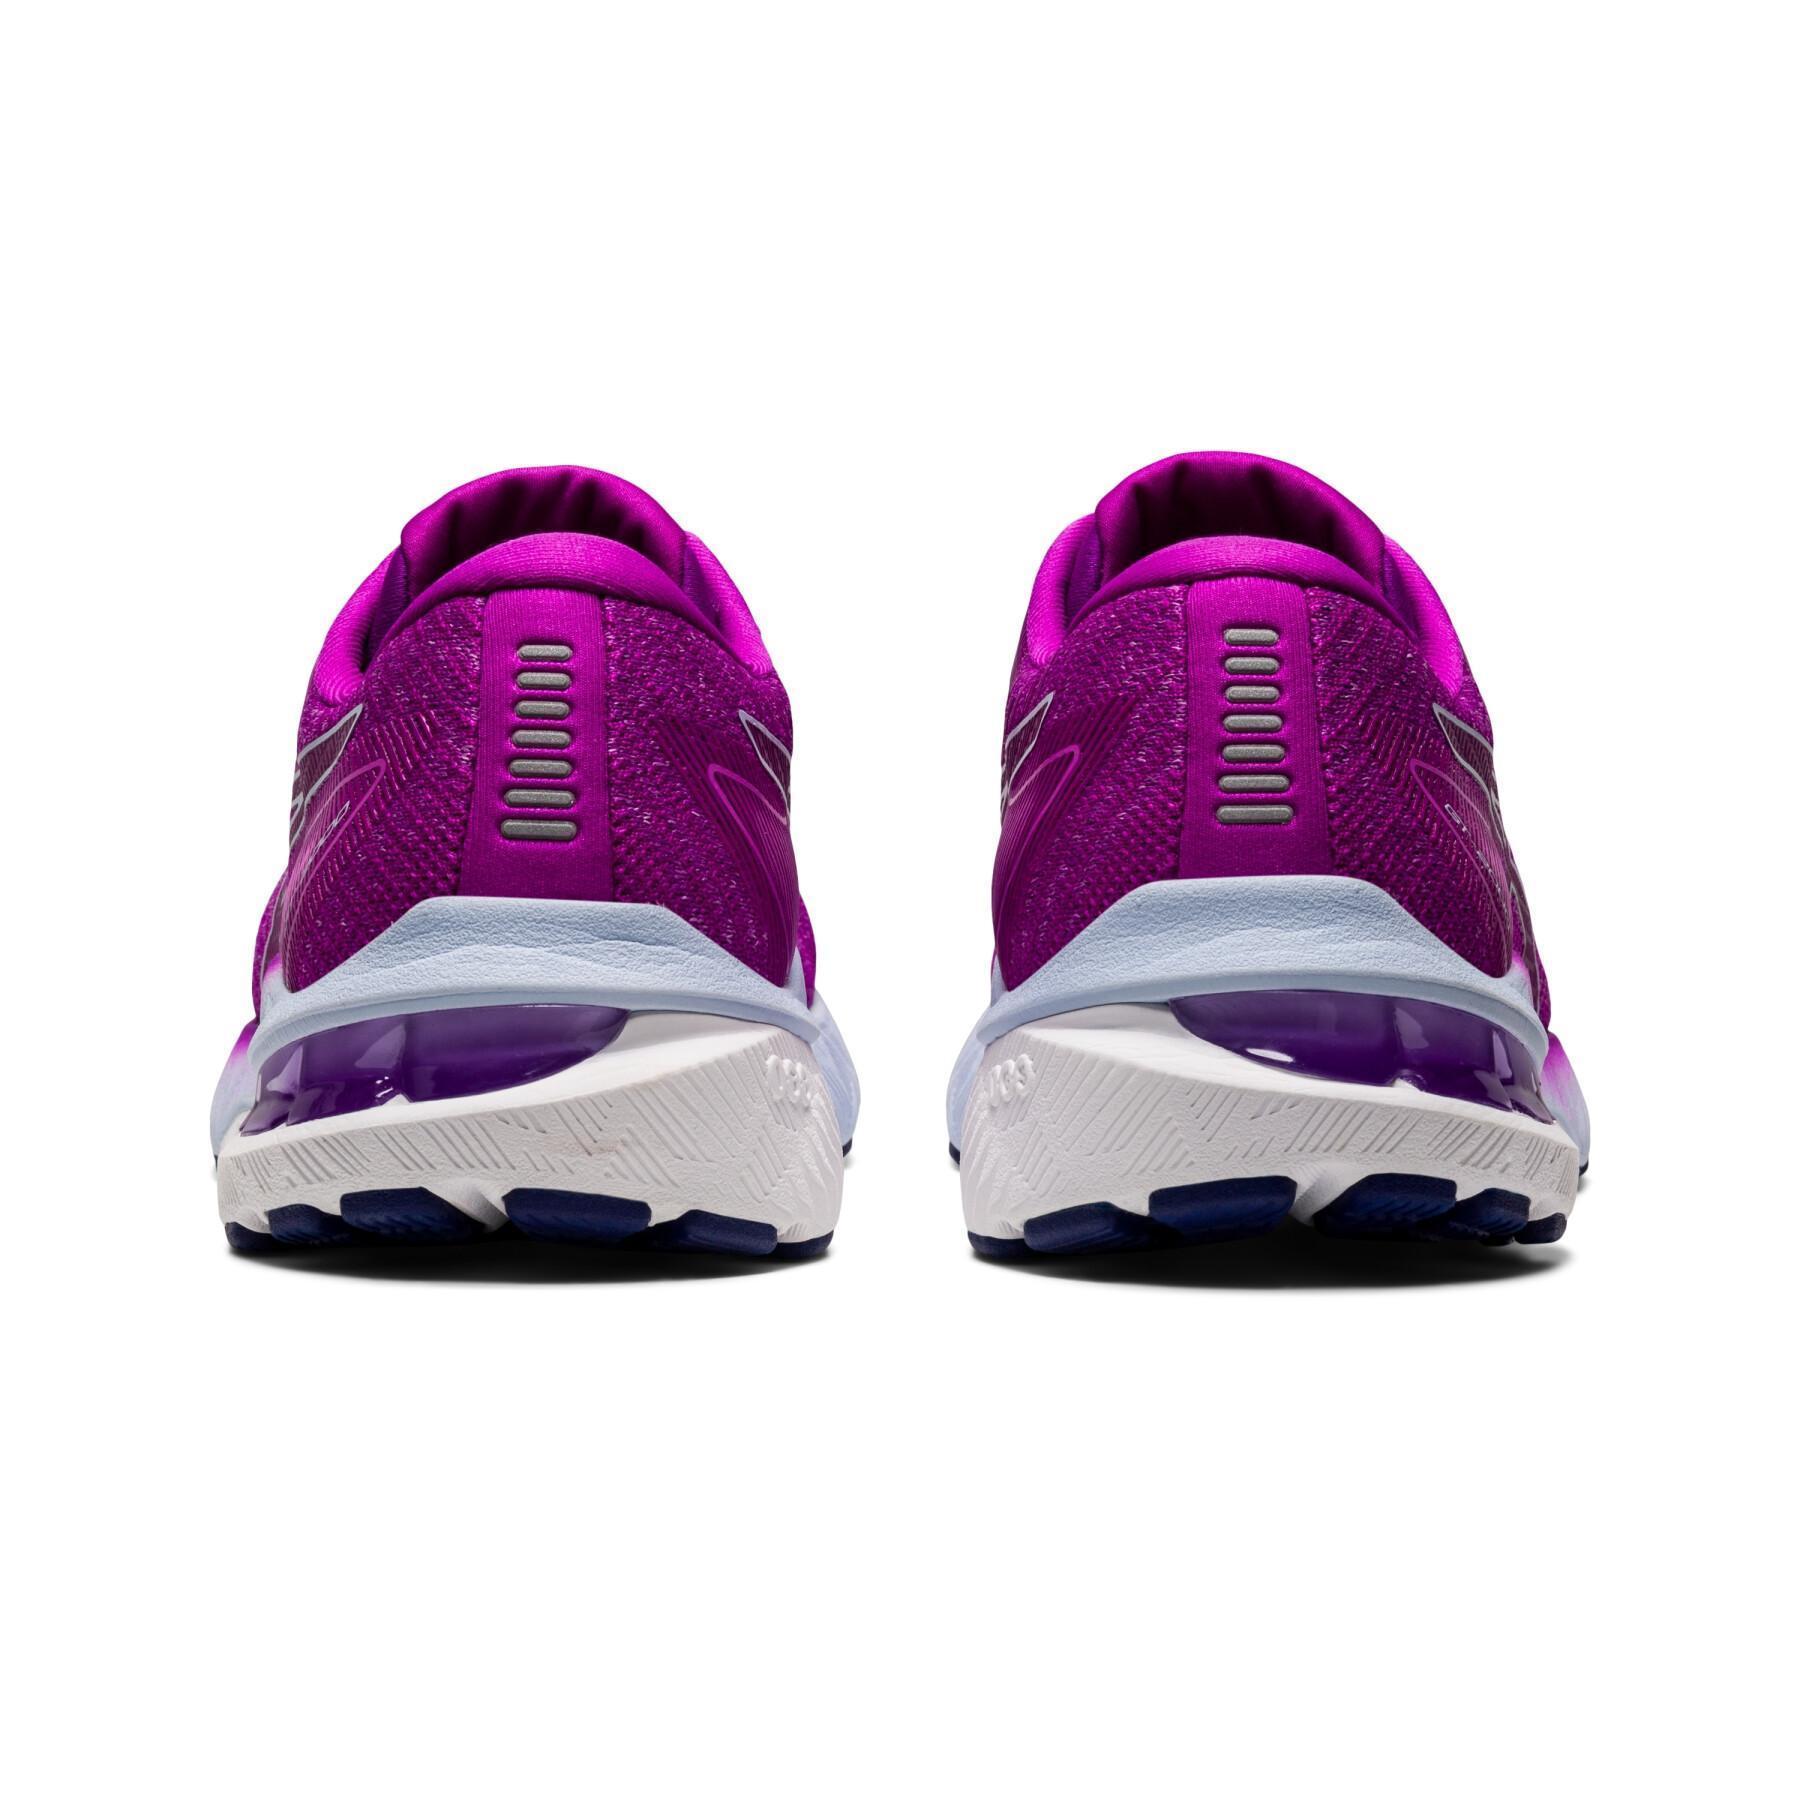 Women's running shoes Asics Gt-2000 10